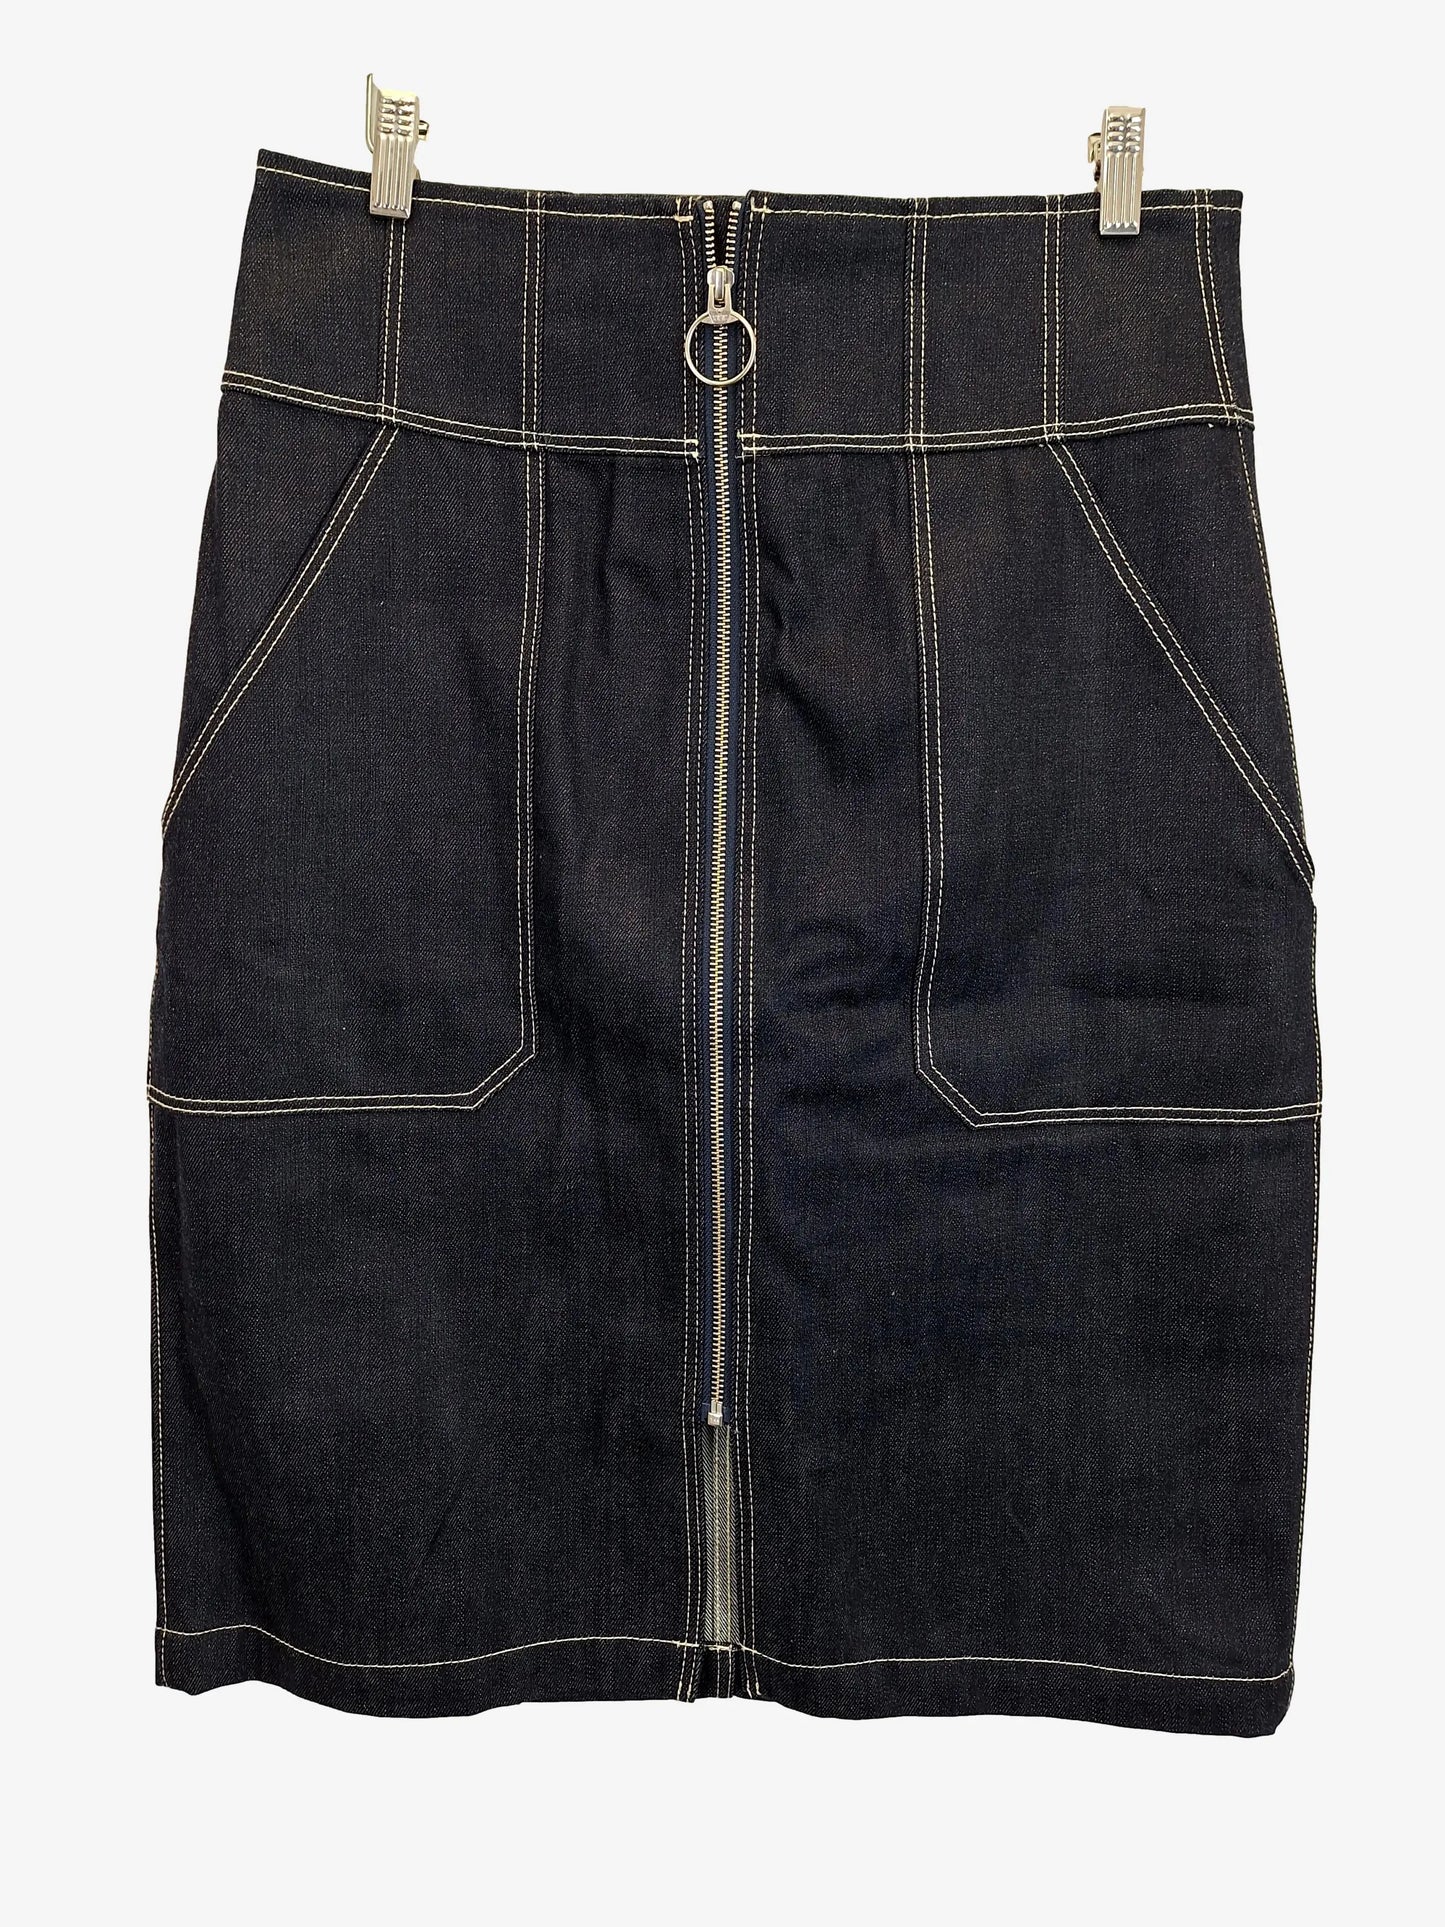 Sass & Bide Denim Stitch Midi Skirt Size 16 by SwapUp-Online Second Hand Store-Online Thrift Store